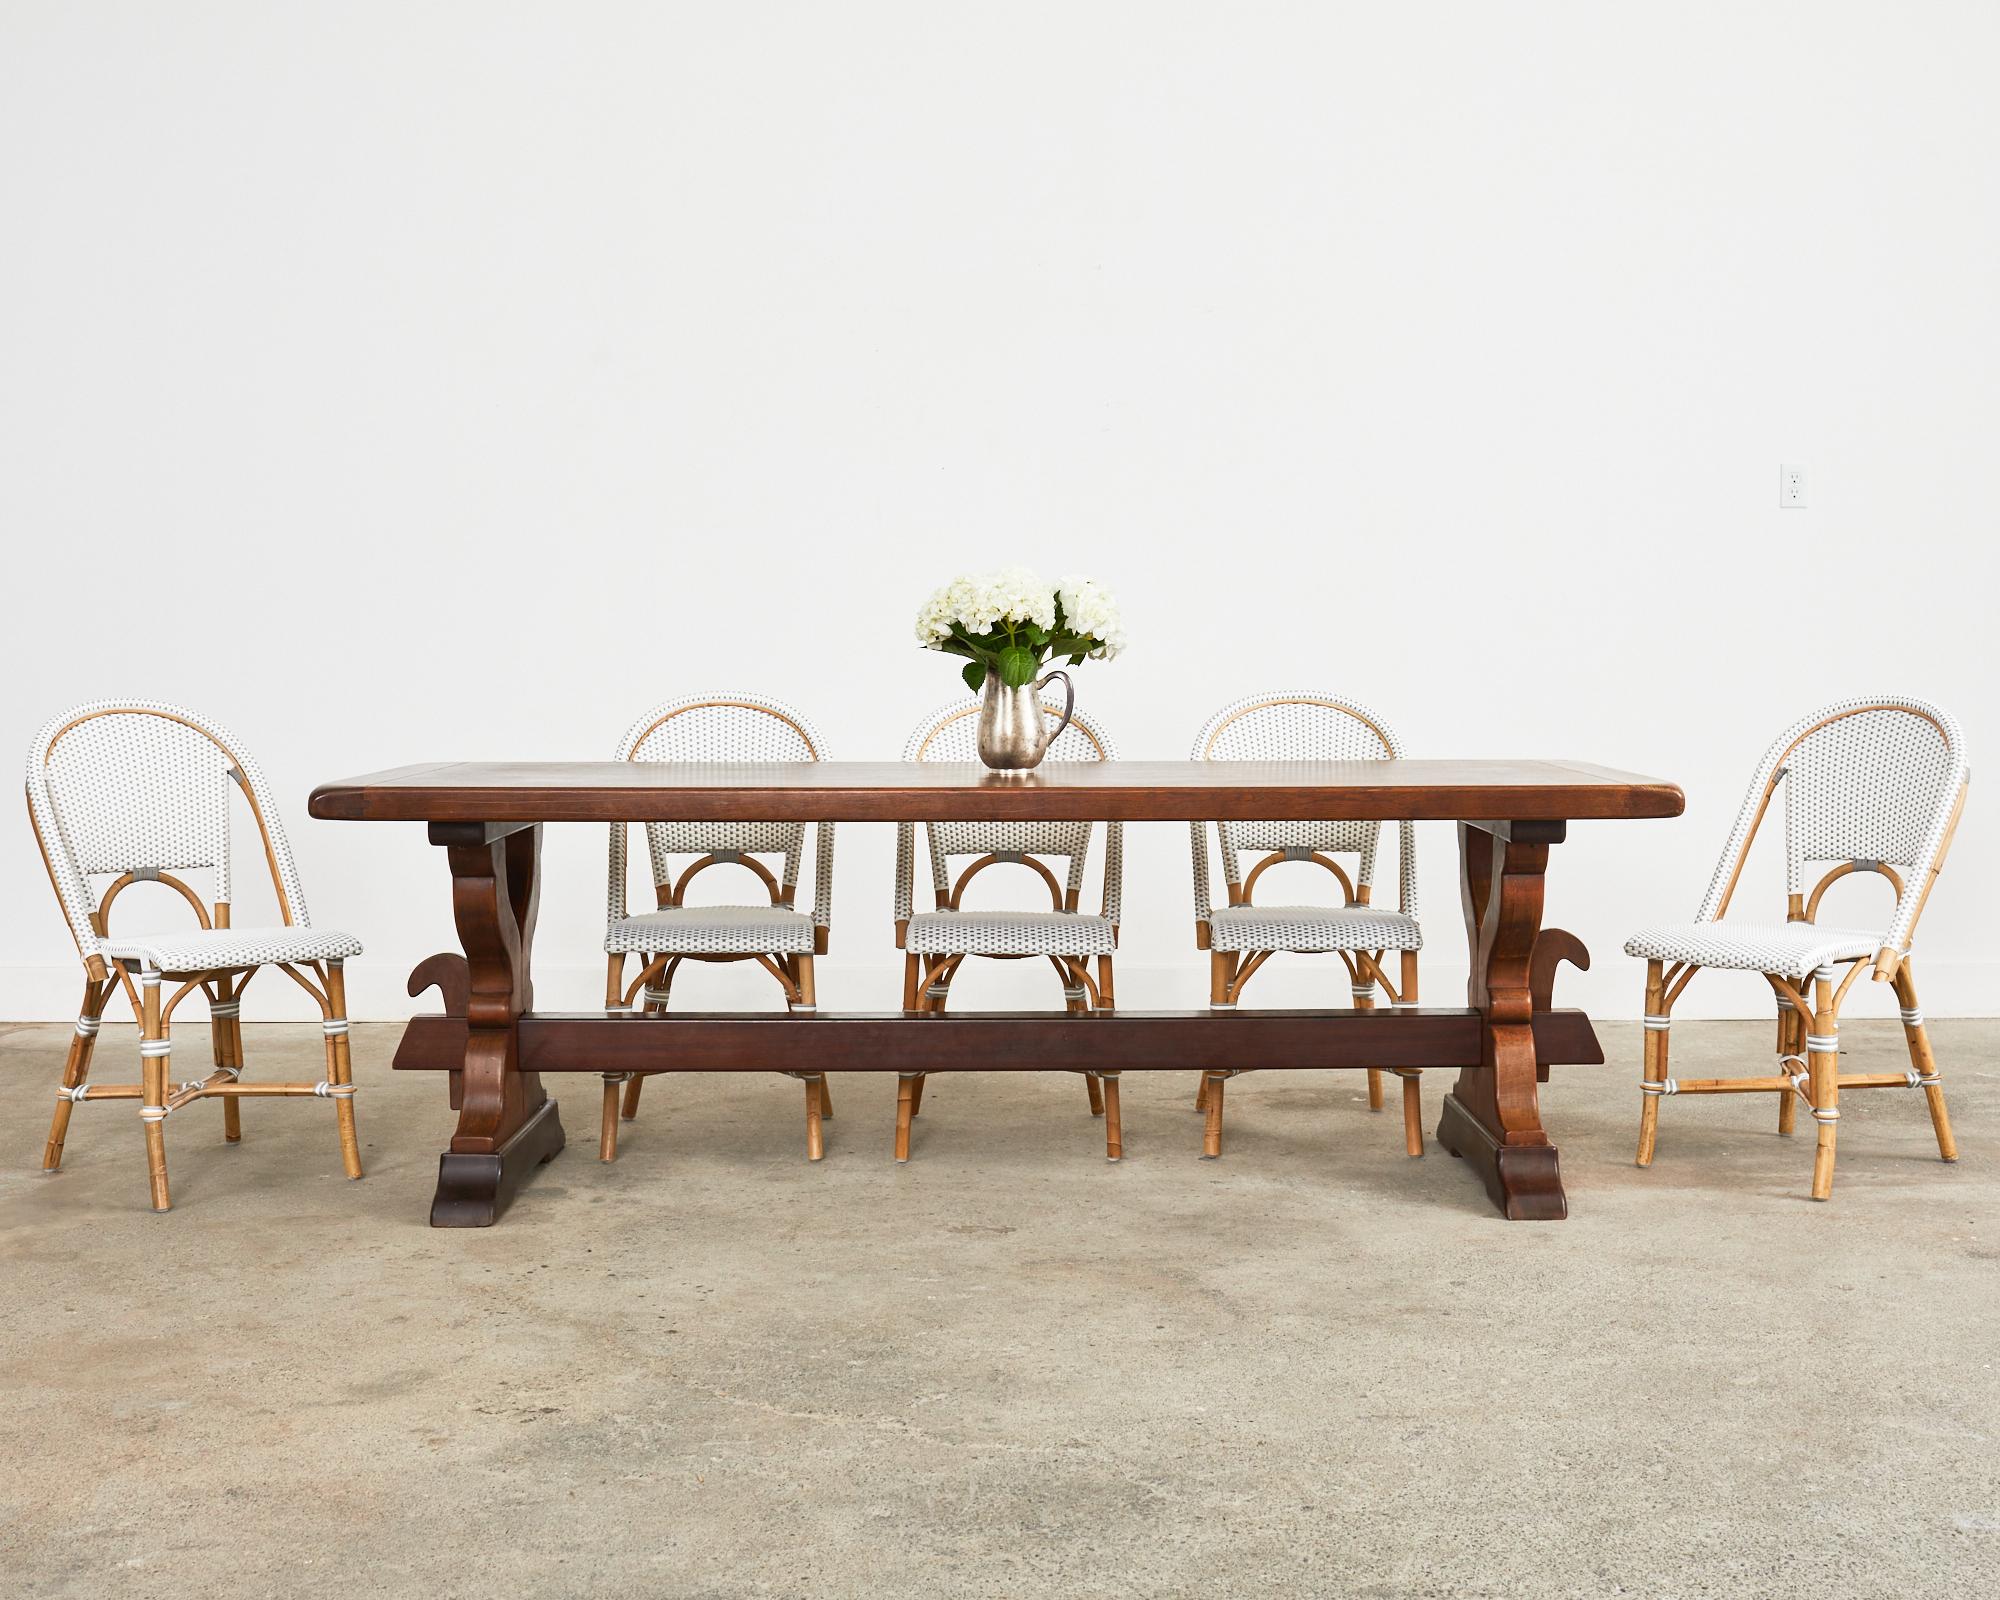 Magnifique table de salle à manger de campagne en chêne provincial français ou table de récolte fabriquée en chêne massif. Le plateau en planches de plus de 2 pouces d'épaisseur, avec des extrémités en planche à pain, est soutenu par une base en